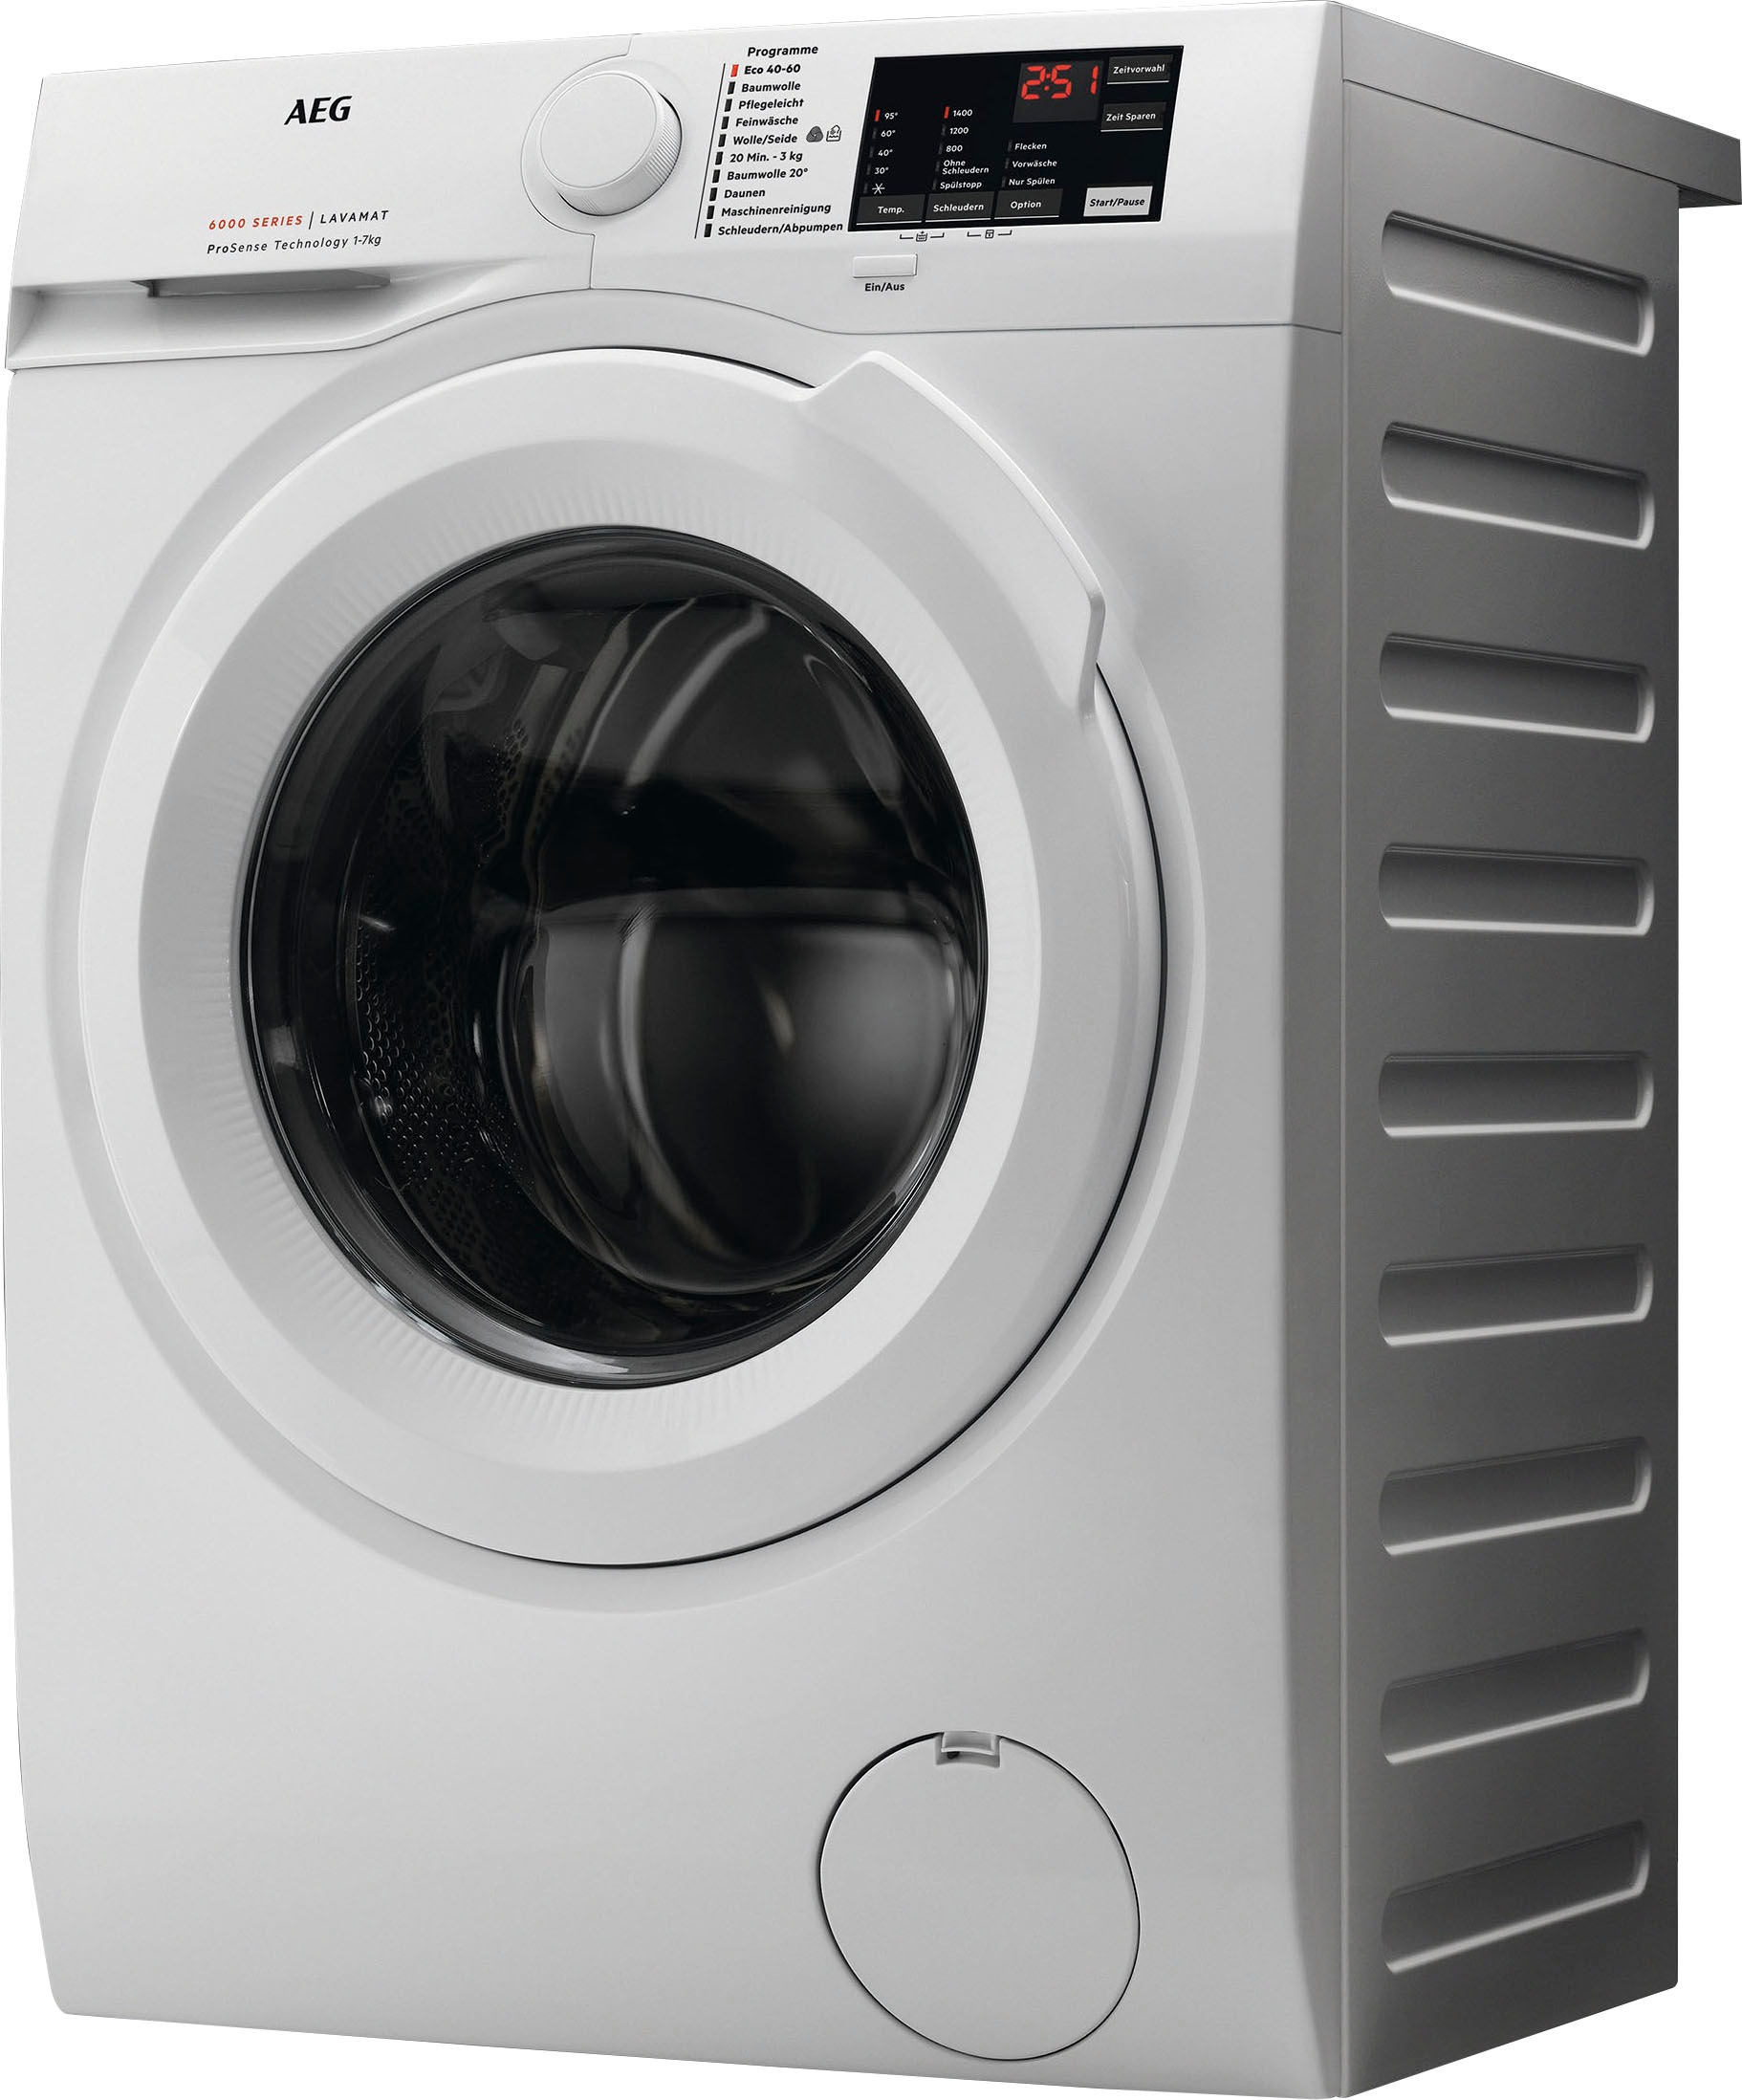 AEG Waschmaschine, L6FBA50490, 9 kg, 1400 mit Dampf Hygiene-/ Programm mit 3 Jahren Garantie U/min, XXL Anti-Allergie